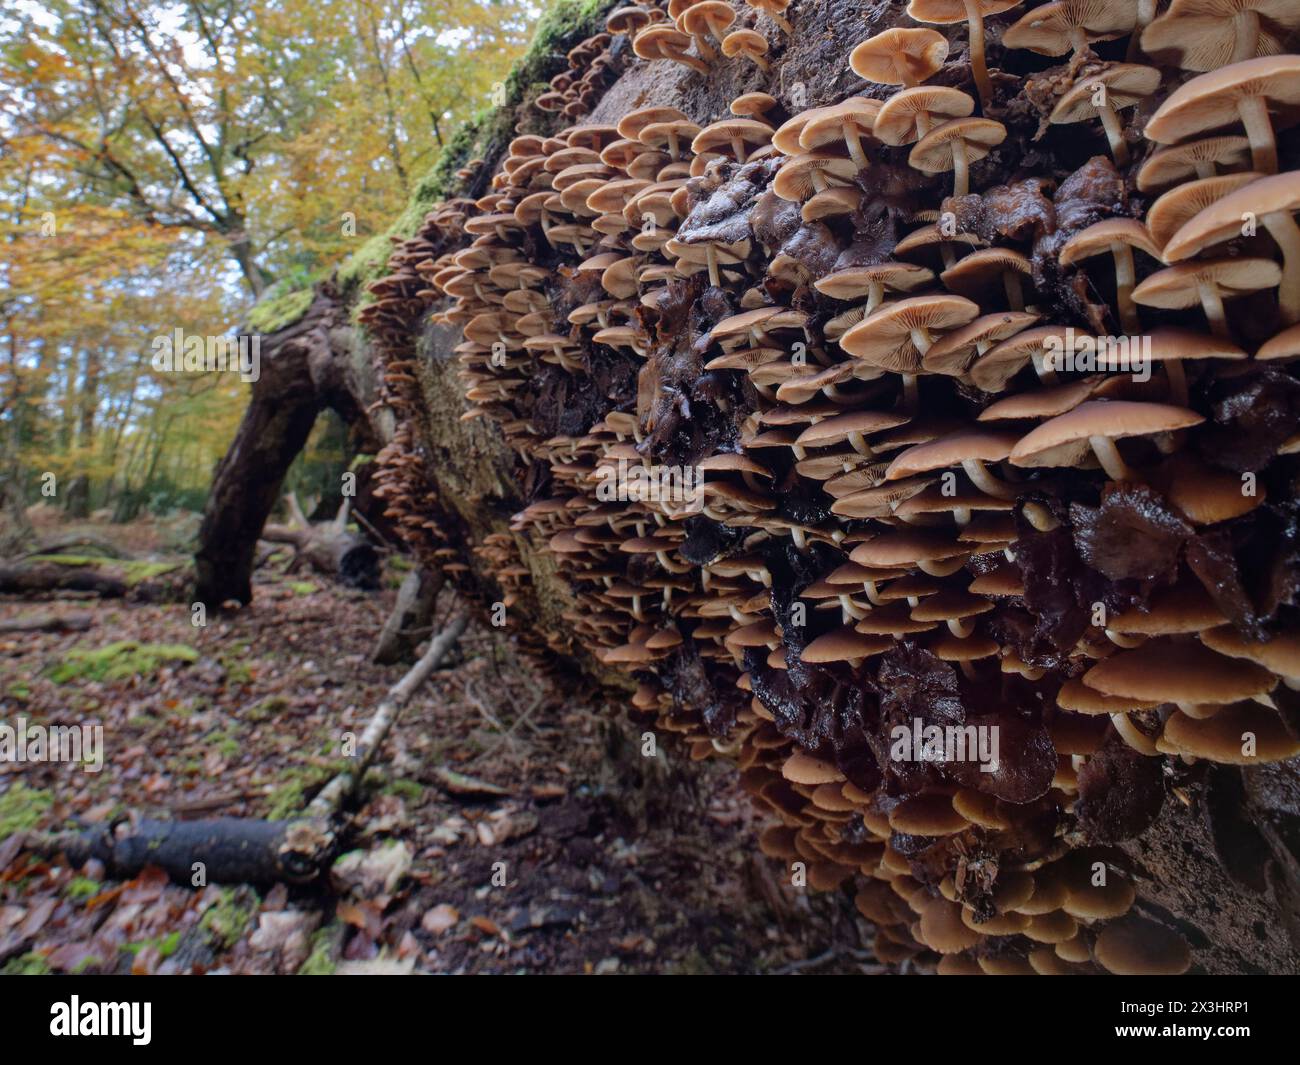 Moignon commun brittlestem (Psathyrella piluliformis) agrégat dense sur un tronc de hêtre déchu (Fagus sylvatica) pourri, New Forest, Hampshire, UK, Nov. Banque D'Images